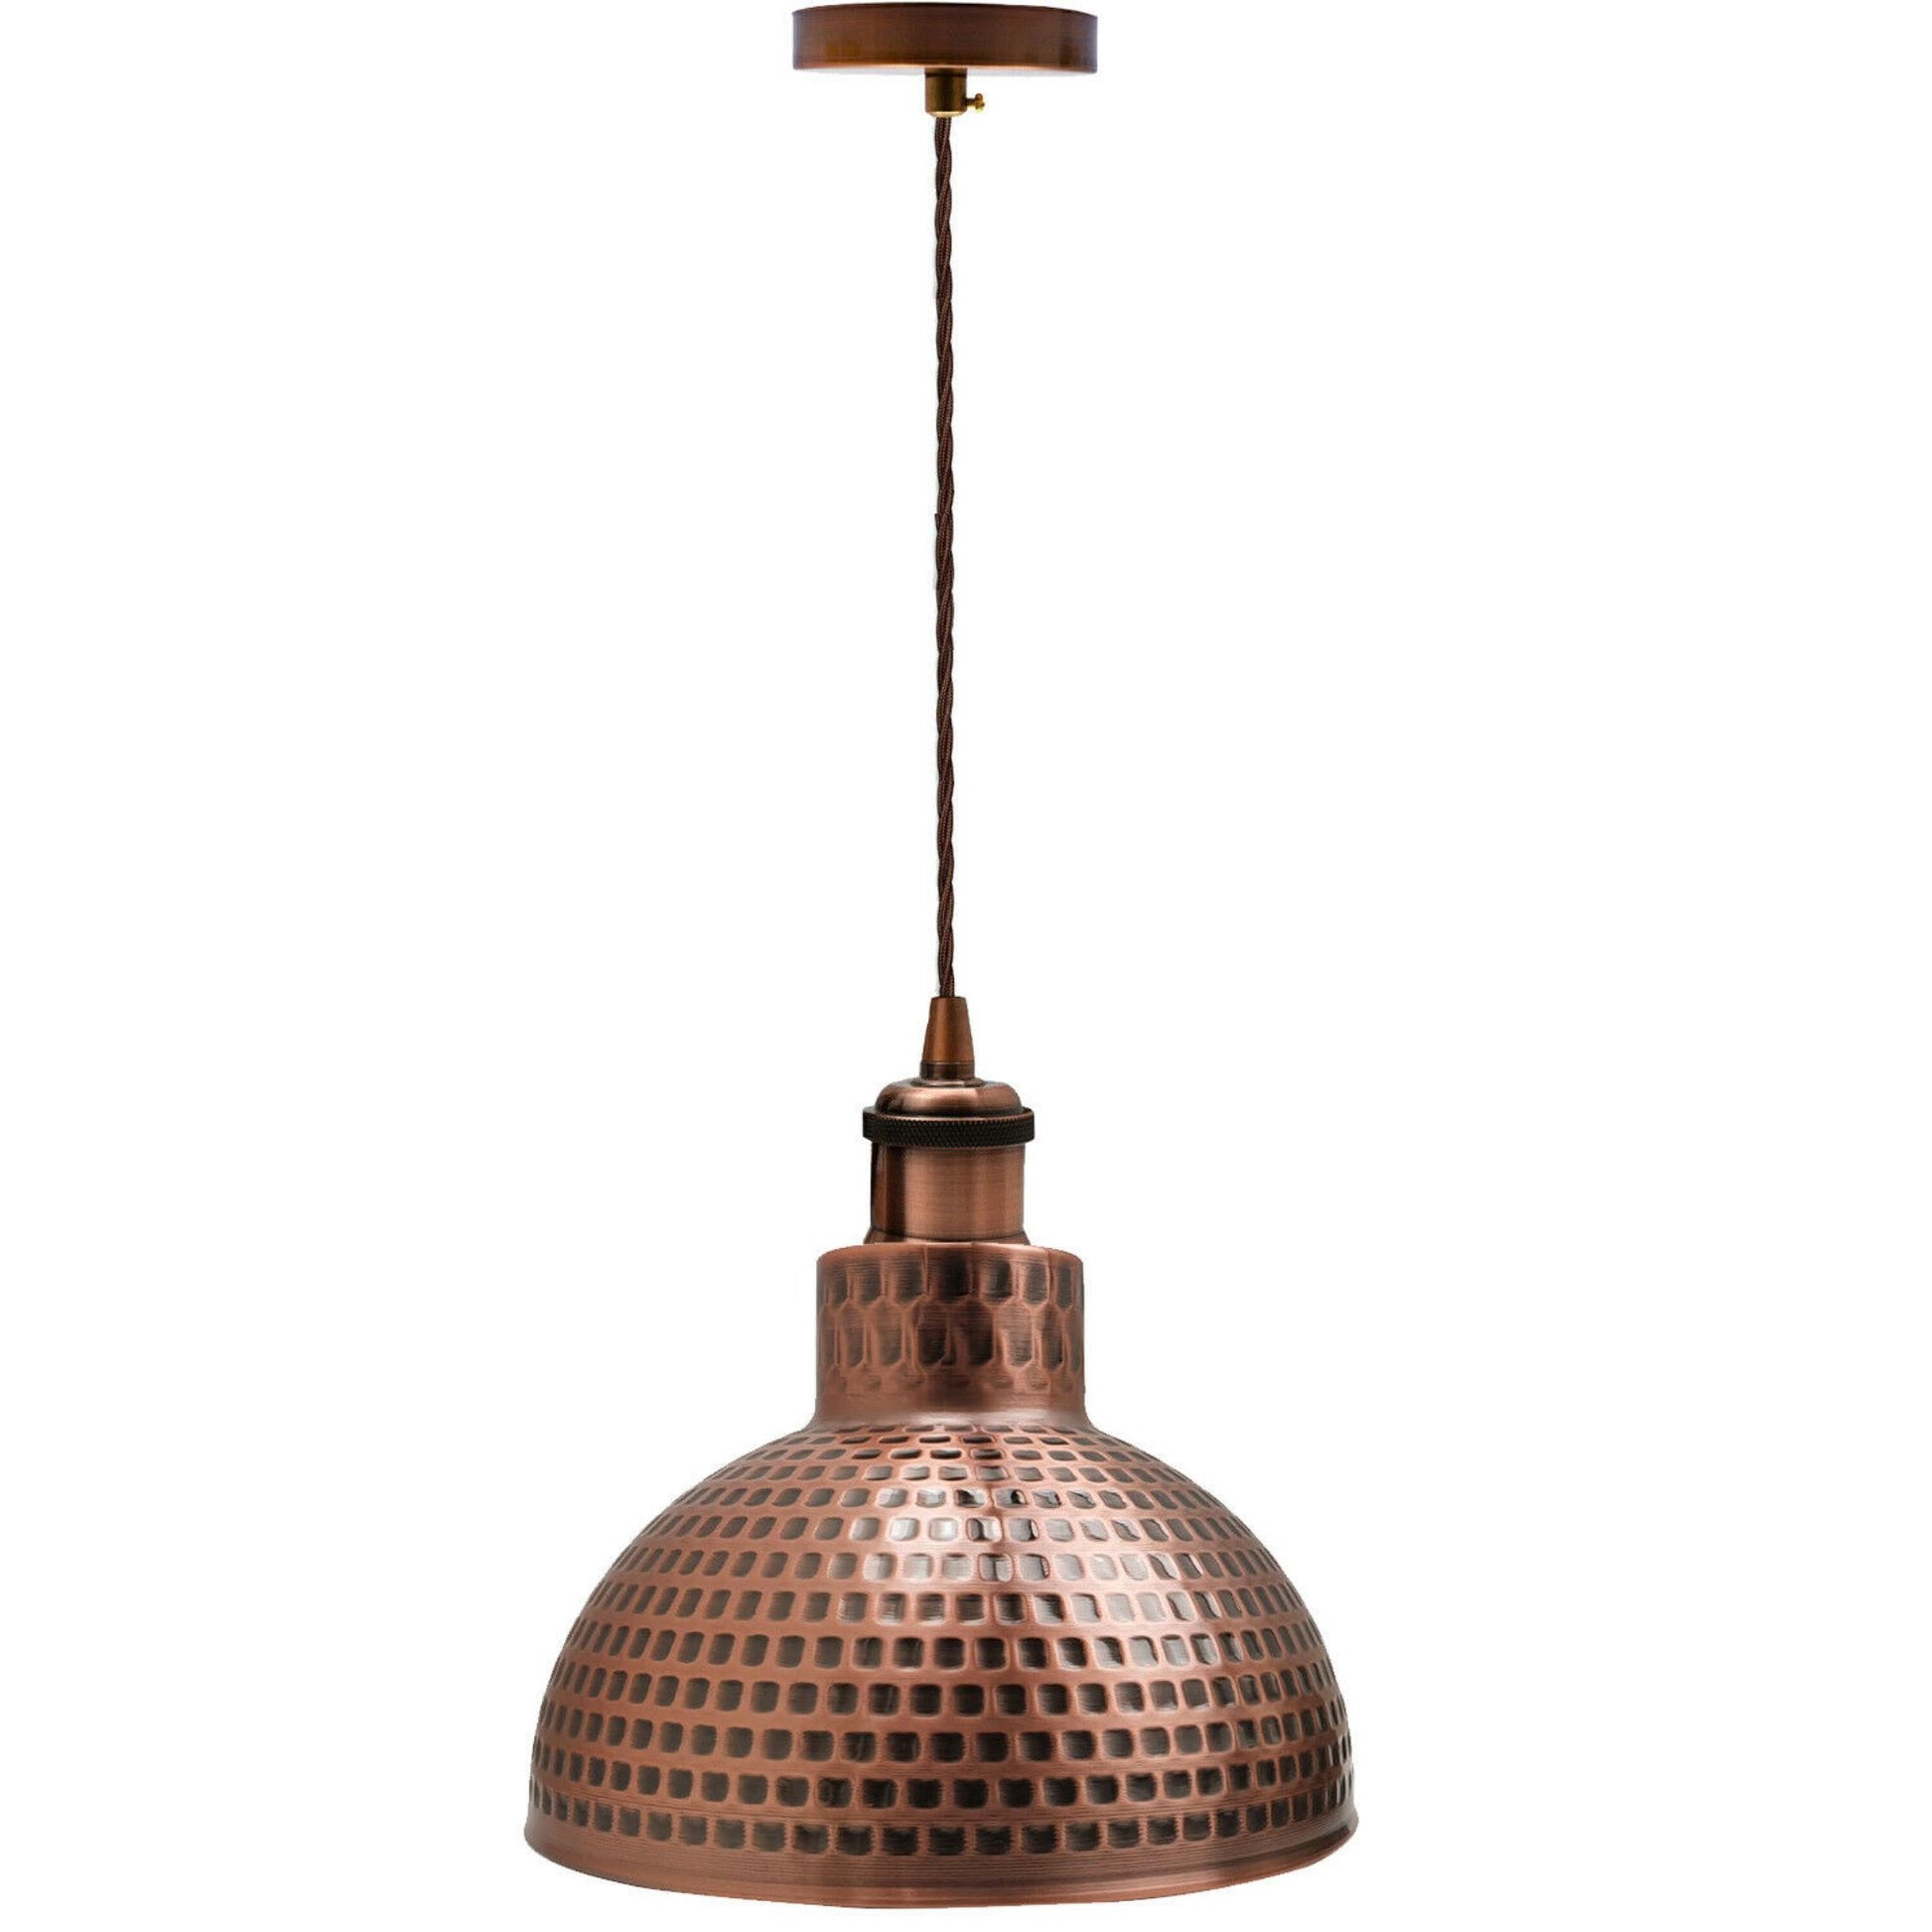 Modern Pendant Light Metal Ceiling Lamp Shade~2466 - LEDSone UK Ltd